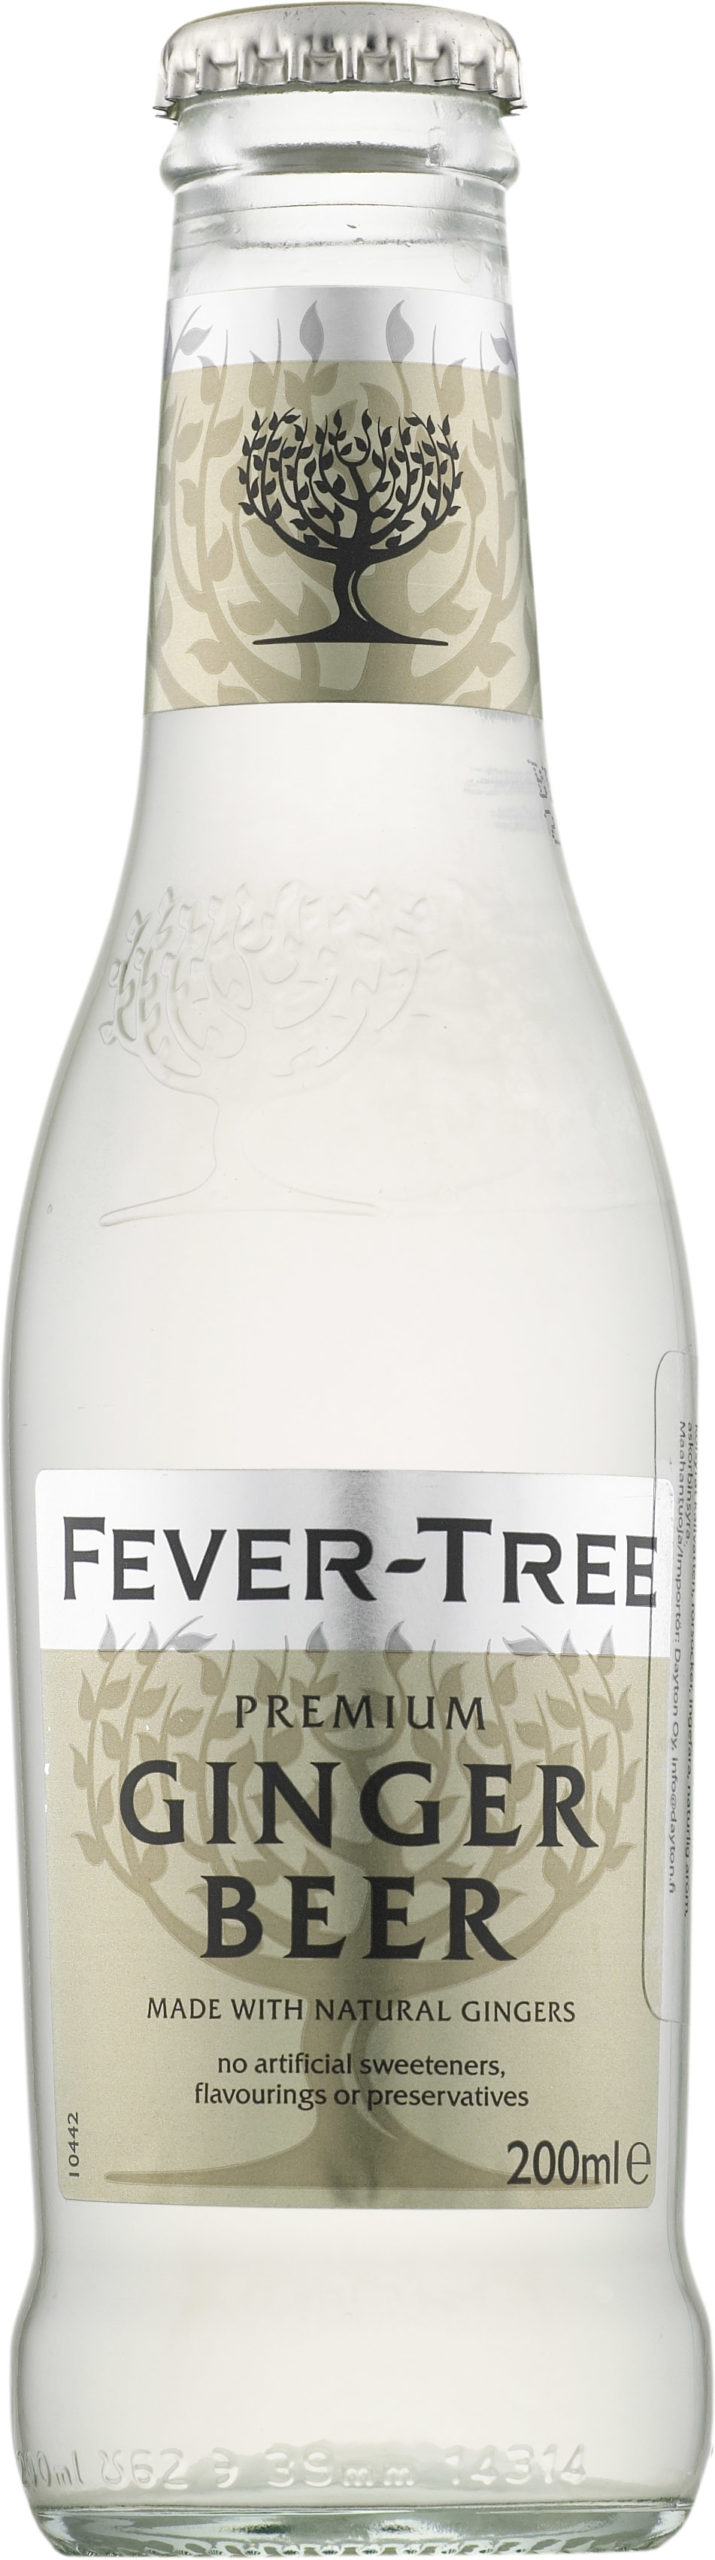 Fever-Tree Fever-Tree Ginger Beer